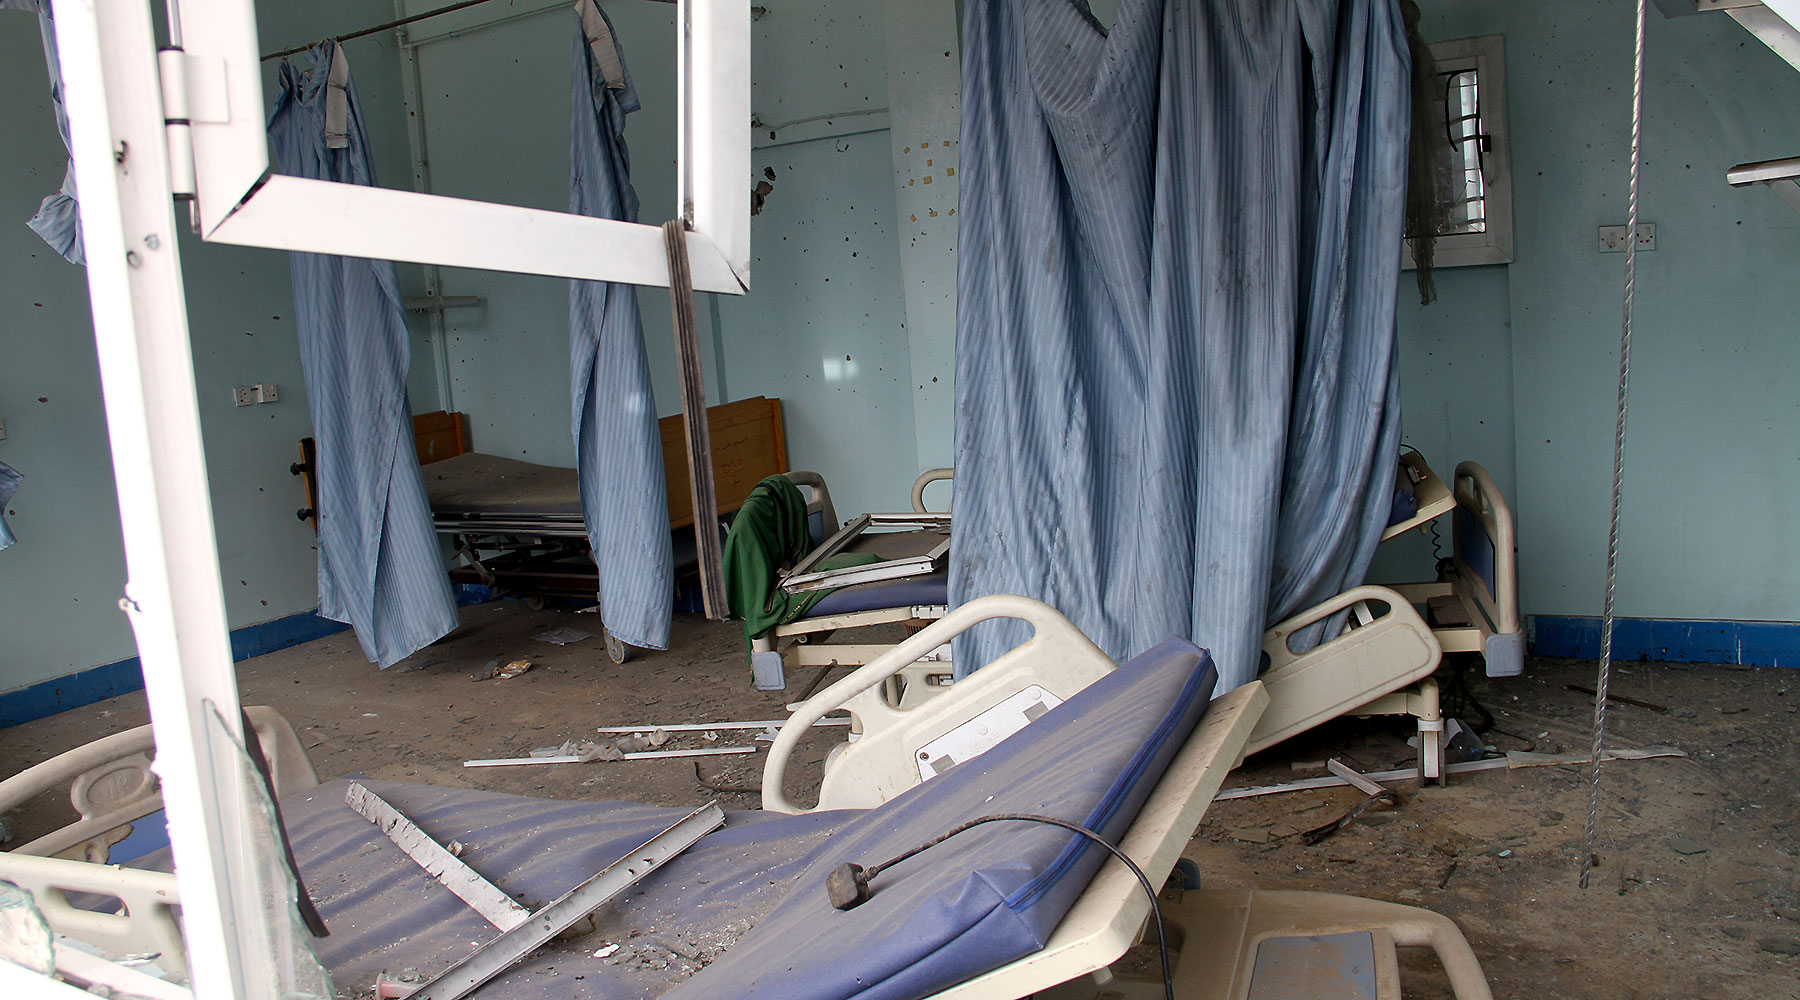 المستشفيات في اليمن